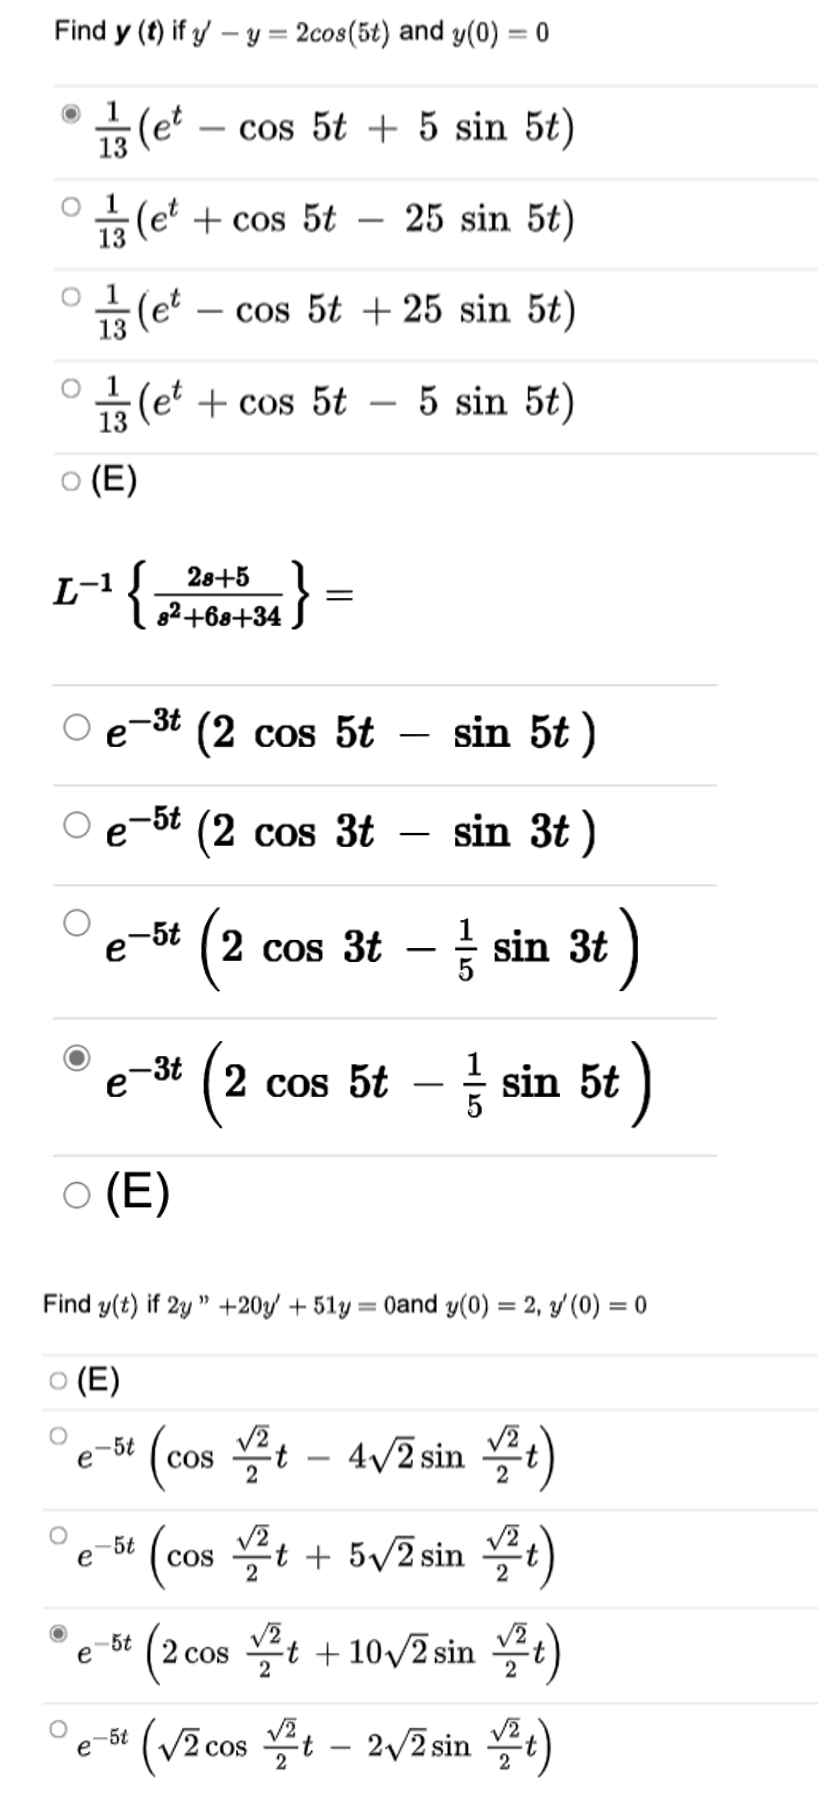 Find y (t) if y – y = 2cos(5t) and y(0) = 0
%3D
1
(et
cos 5t + 5 sin 5t)
13
O 1
금(e' + cos 5t-25 sin 5t)
13
1
(et
cos 5t + 25 sin 5t)
13
1
5(et + cos 5t – 5 sin 5t)
-
13
O (E)
}
28+5
L-1
82+68+34
-3t
(2 cos 5t
sin 5t )
-
-5t
e
(2 cos 3t
sin 3t )
-
(
2 cos 3t – sin 3t
e-5t
e-3t (
2 cos 5t – = sin 5t )
(E)
Find y(t) if 2y " +20y + 51y = 0and y(0) = 2, y' (0) = 0
o (E)
-5t
e
(cos t - 4/2sin :)
(cos t + 5v2 sin t)
-5t
COS
(2 cos t + 10/2 sin )
5t
e
(VECOS 블-2v2sin 플)
-5t
e
2 cos
